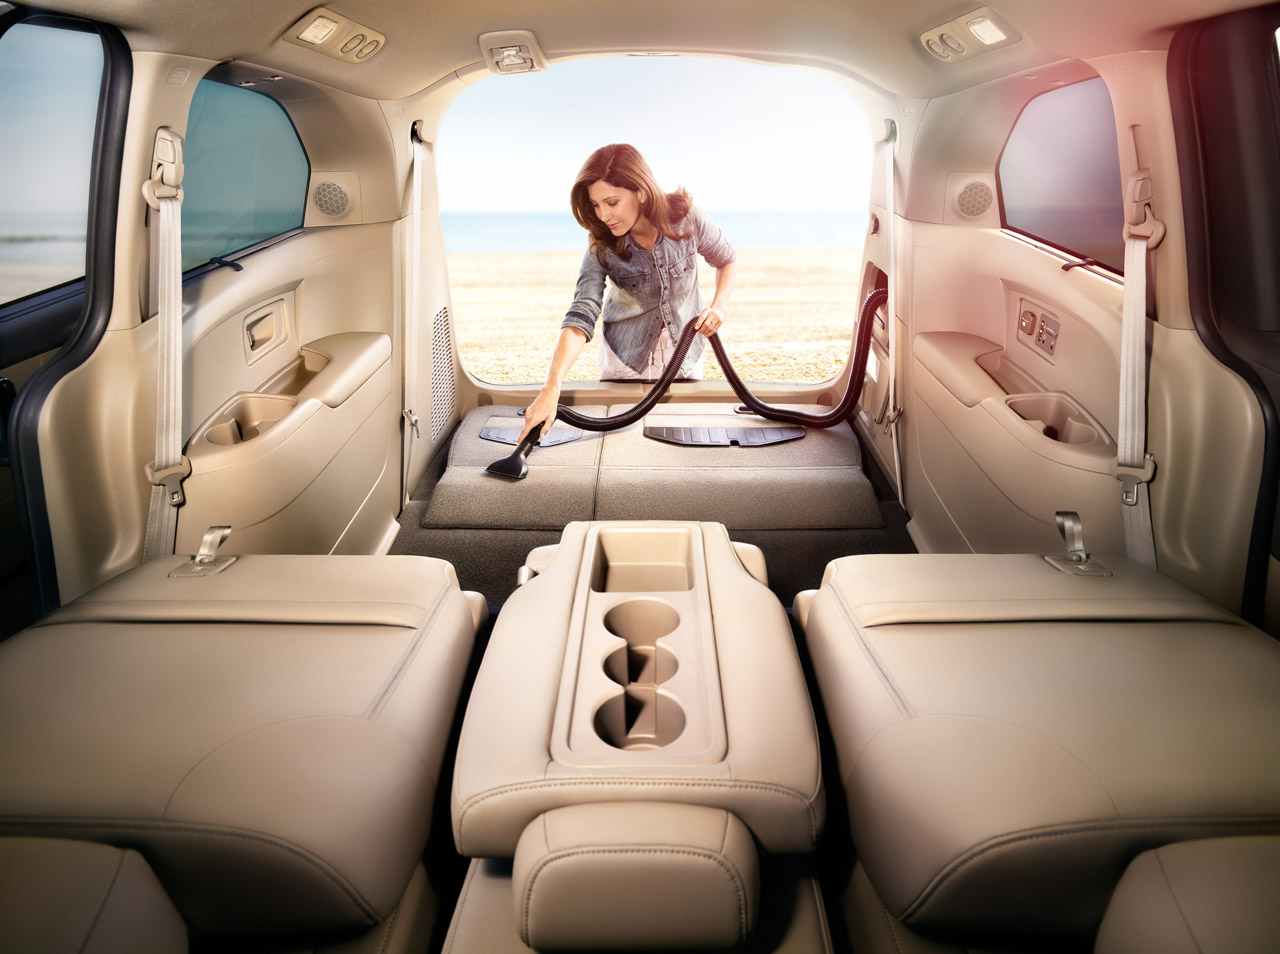 2014 Honda Odyssey - автомобиль со встроенным пылесосом